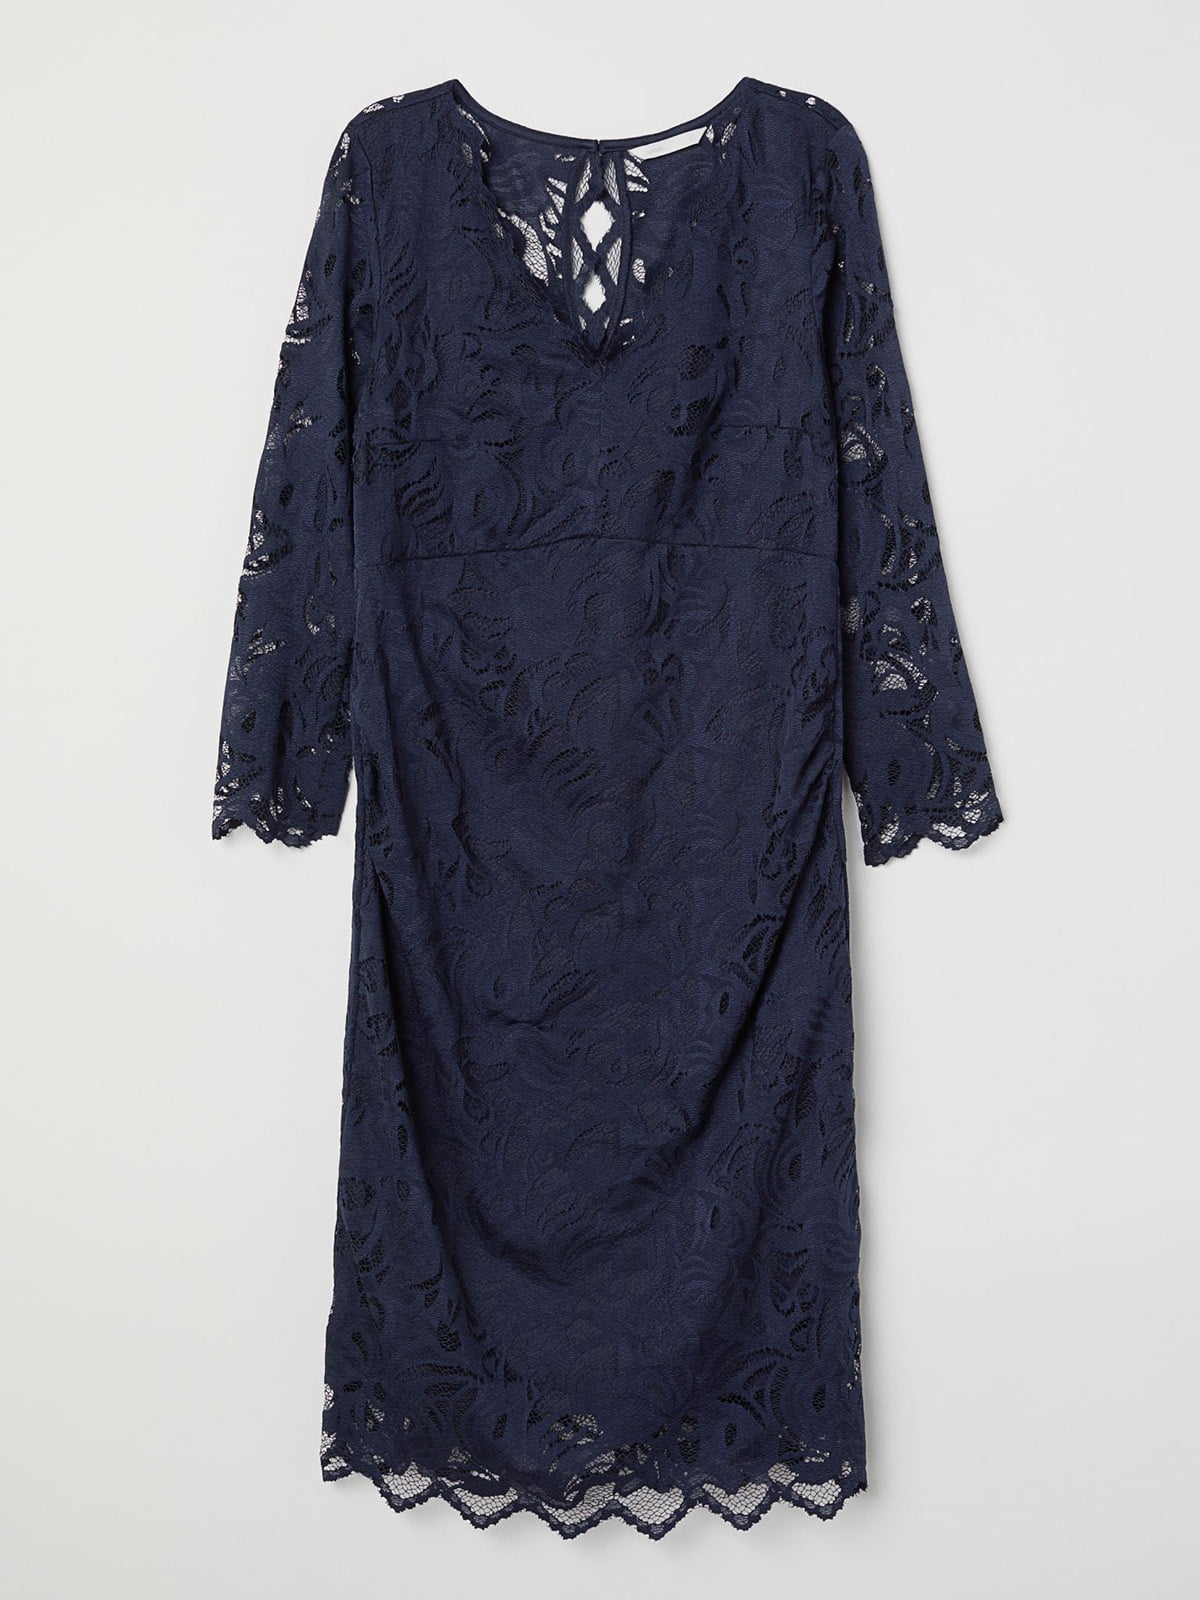 Платье-футляр для беременных темно-синее | 5926227